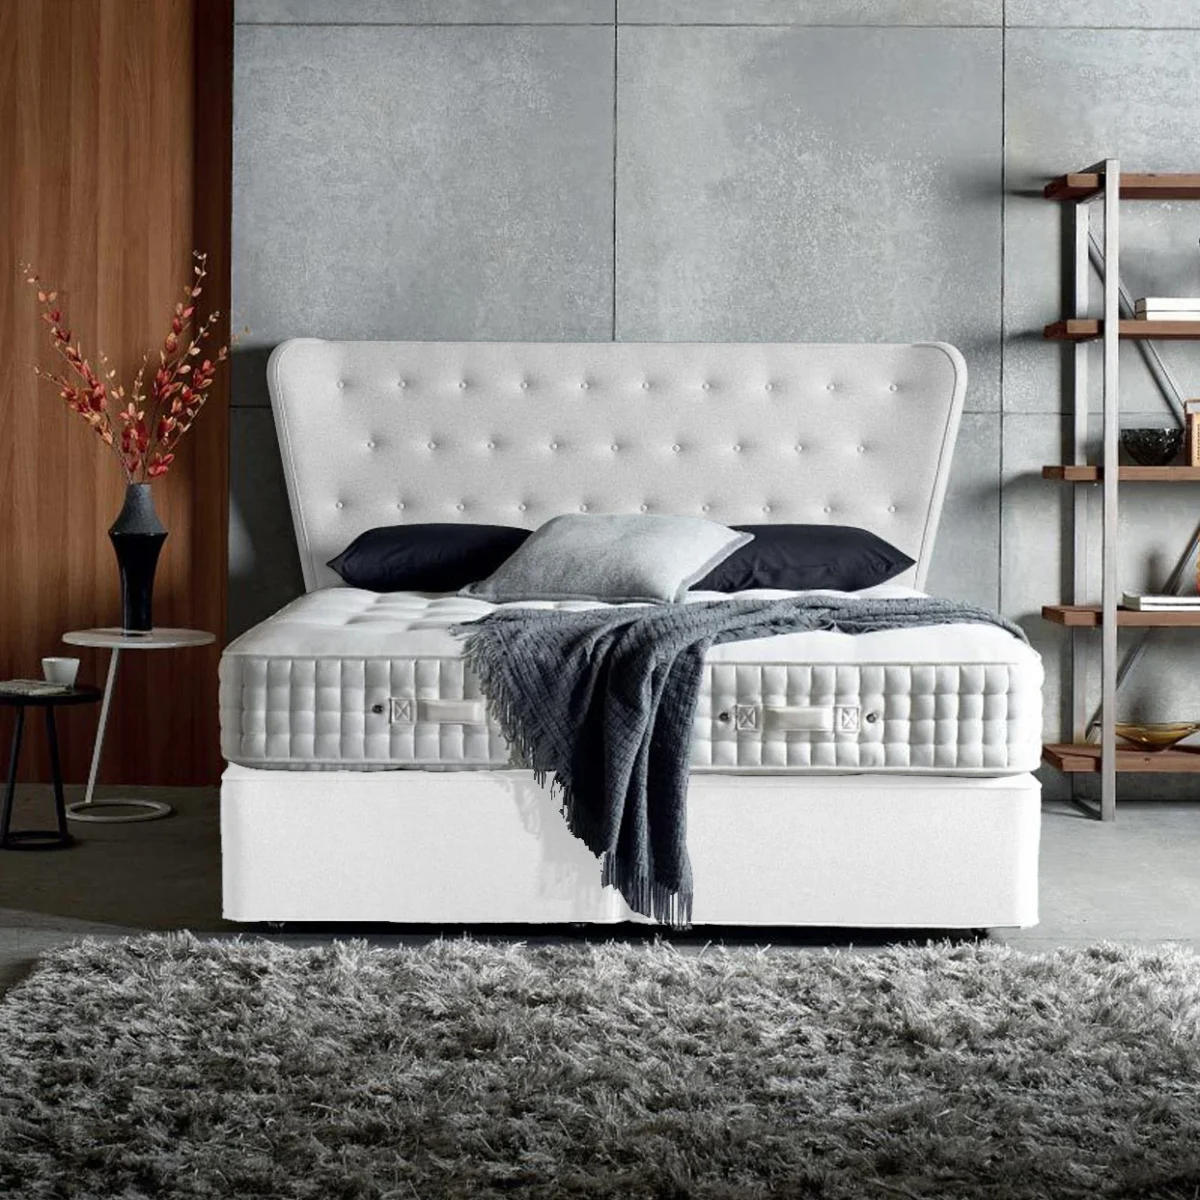 Υφασμάτινο Κρεβάτι Ύπνου Thassos White ypnos.gr